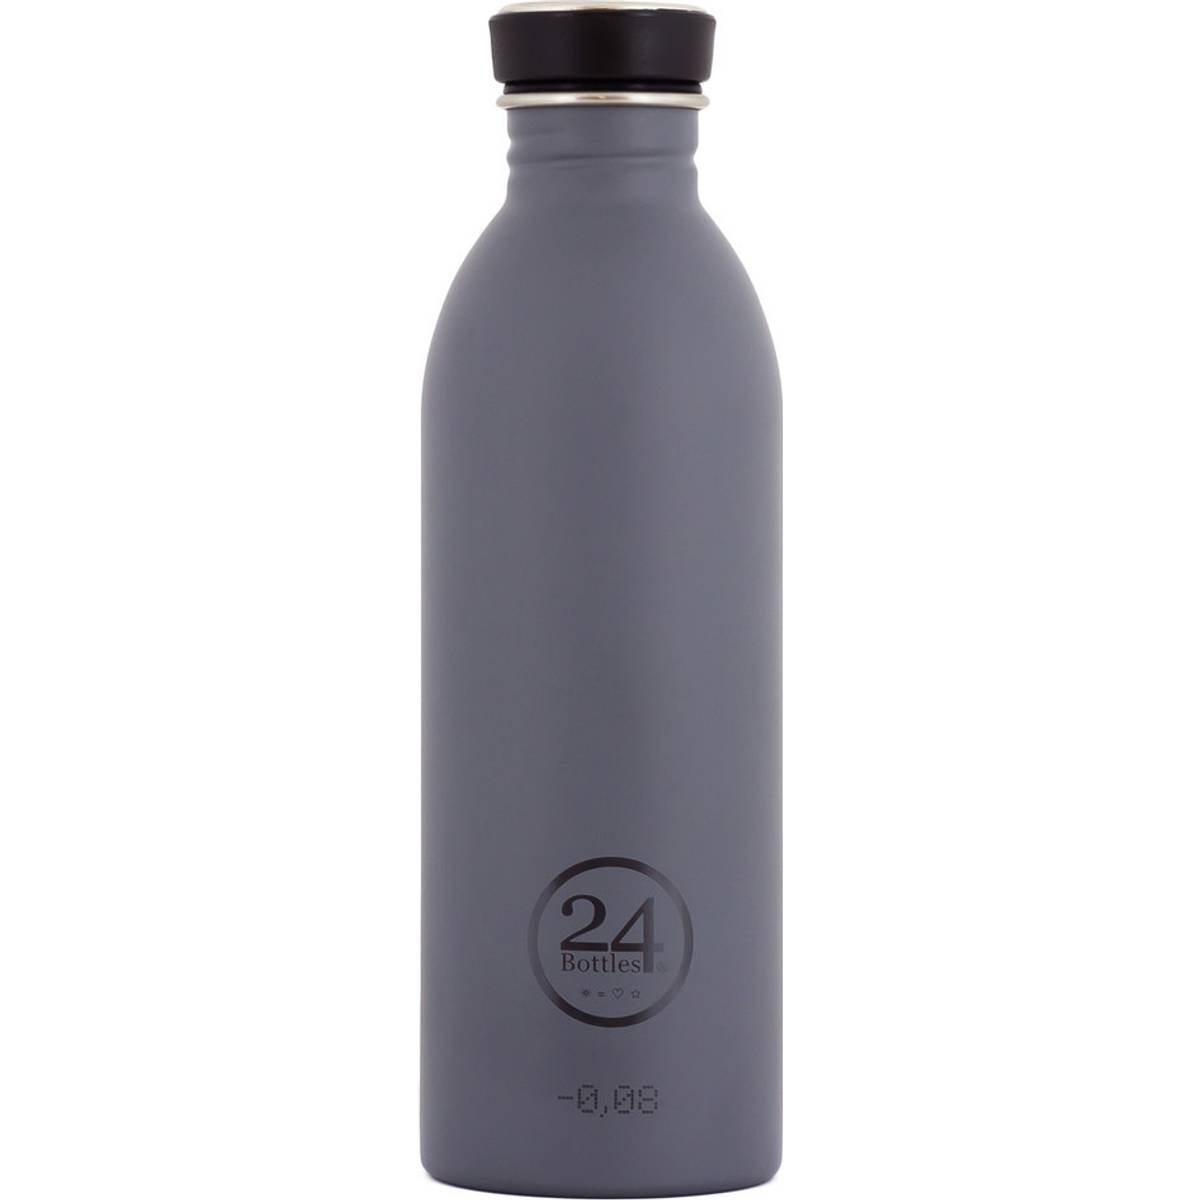 Vandflaske (1000+ produkter) hos PriceRunner • Se billigste pris nu »